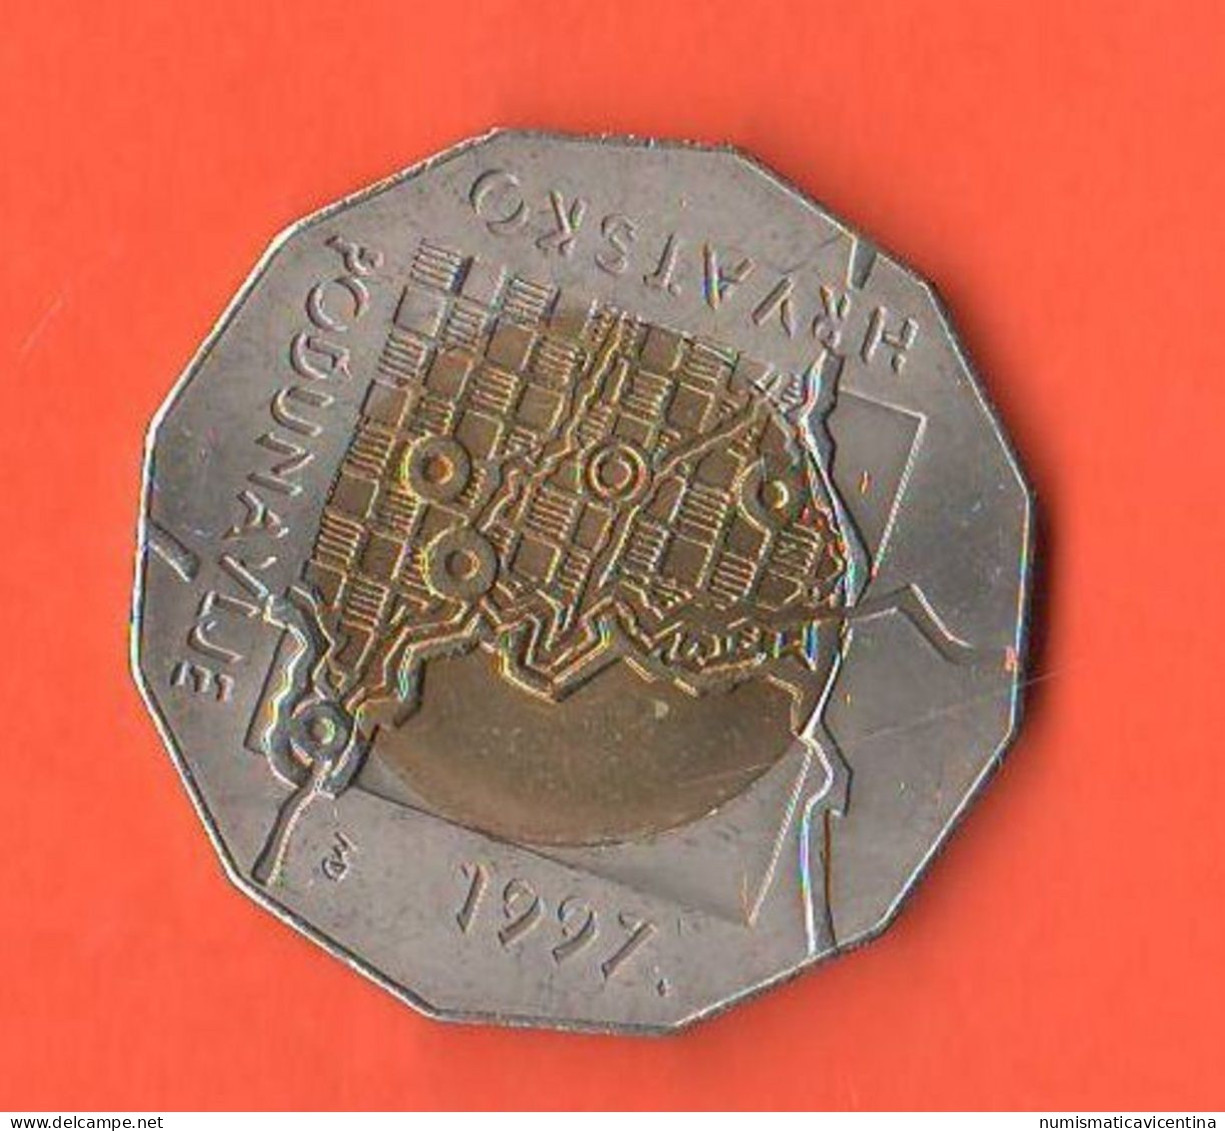 Croazia 25 Kuna 1997 Croatia ONU Republic Hrvatska Croatie Bimetallic Coin - Croatia